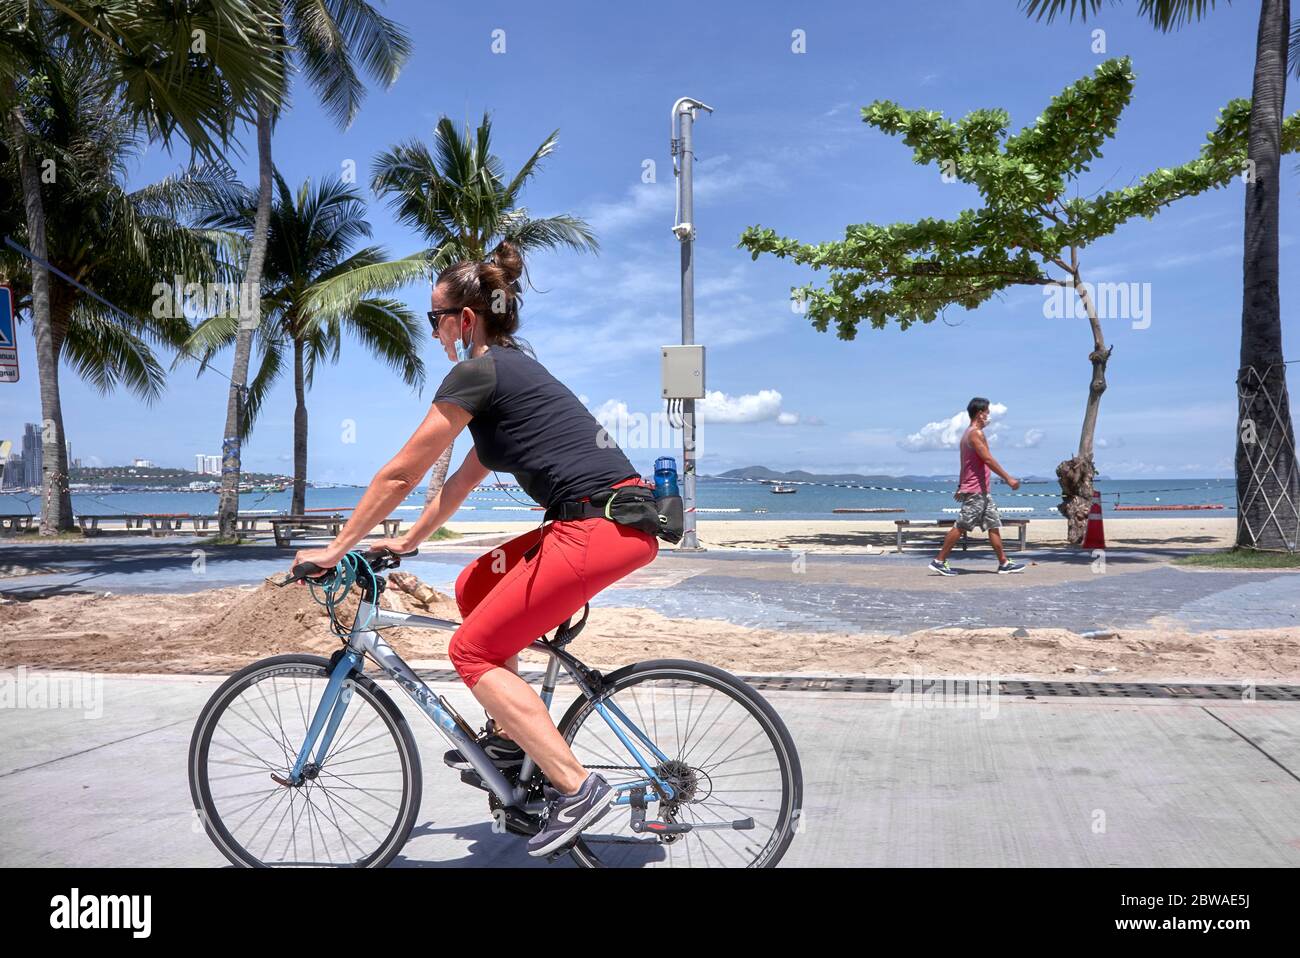 Exercice Covid 19. Femme prenant l'exercice de vélo pendant le verrouillage du coronavirus avec l'homme marchant dans l'arrière-plan. Thaïlande, Asie Banque D'Images